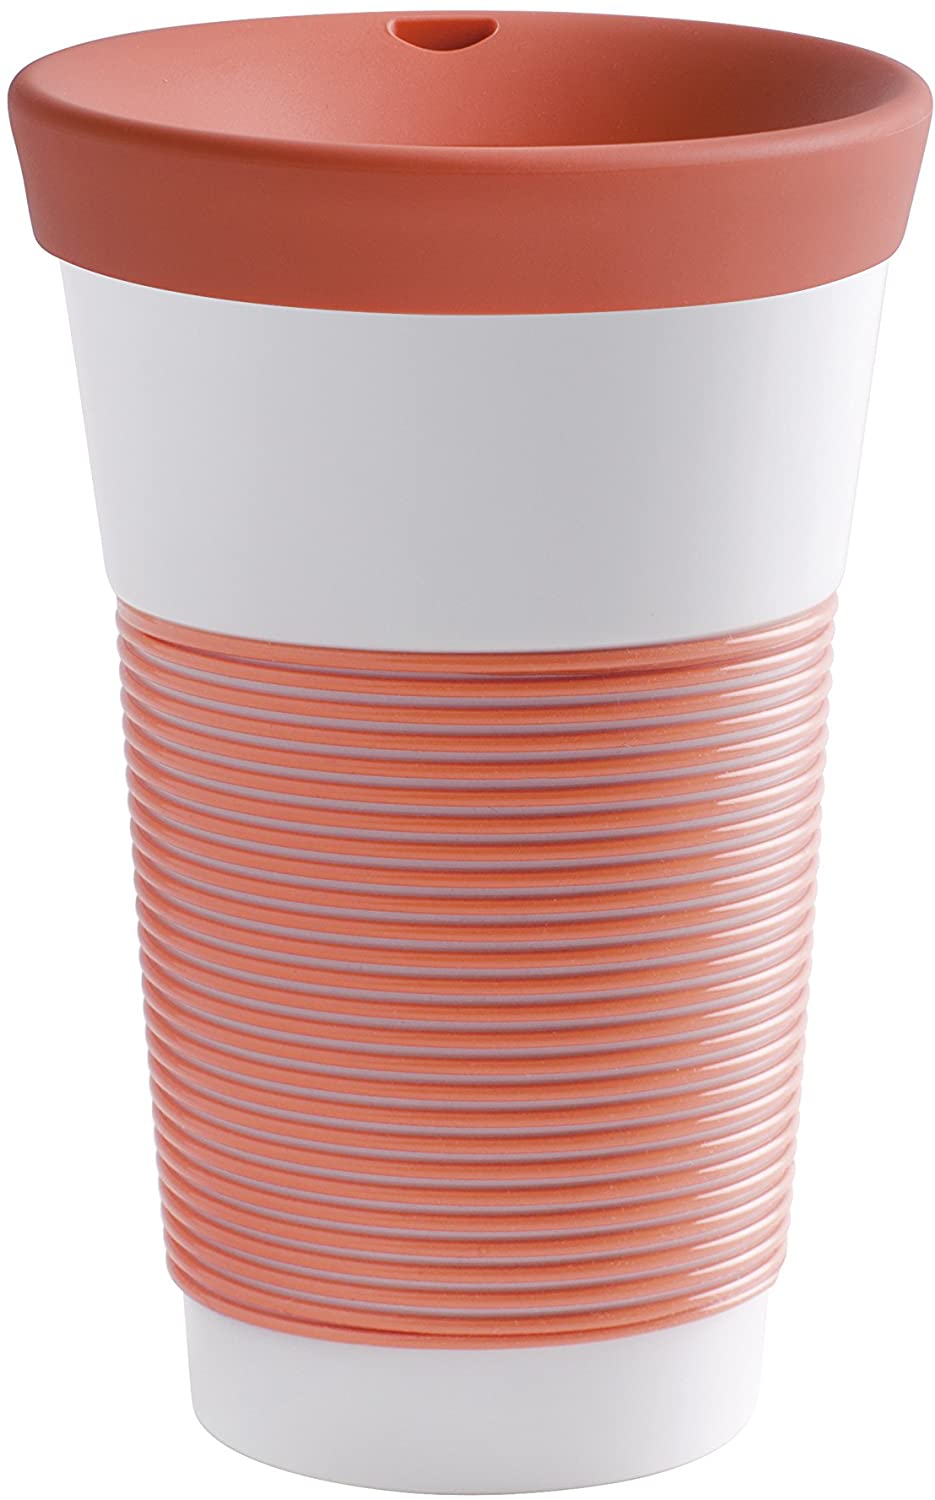 Kahla Cupit Mug, 0.23 Litre, With A Lid, Coffee To Go Style Mug, Pro Eco, P